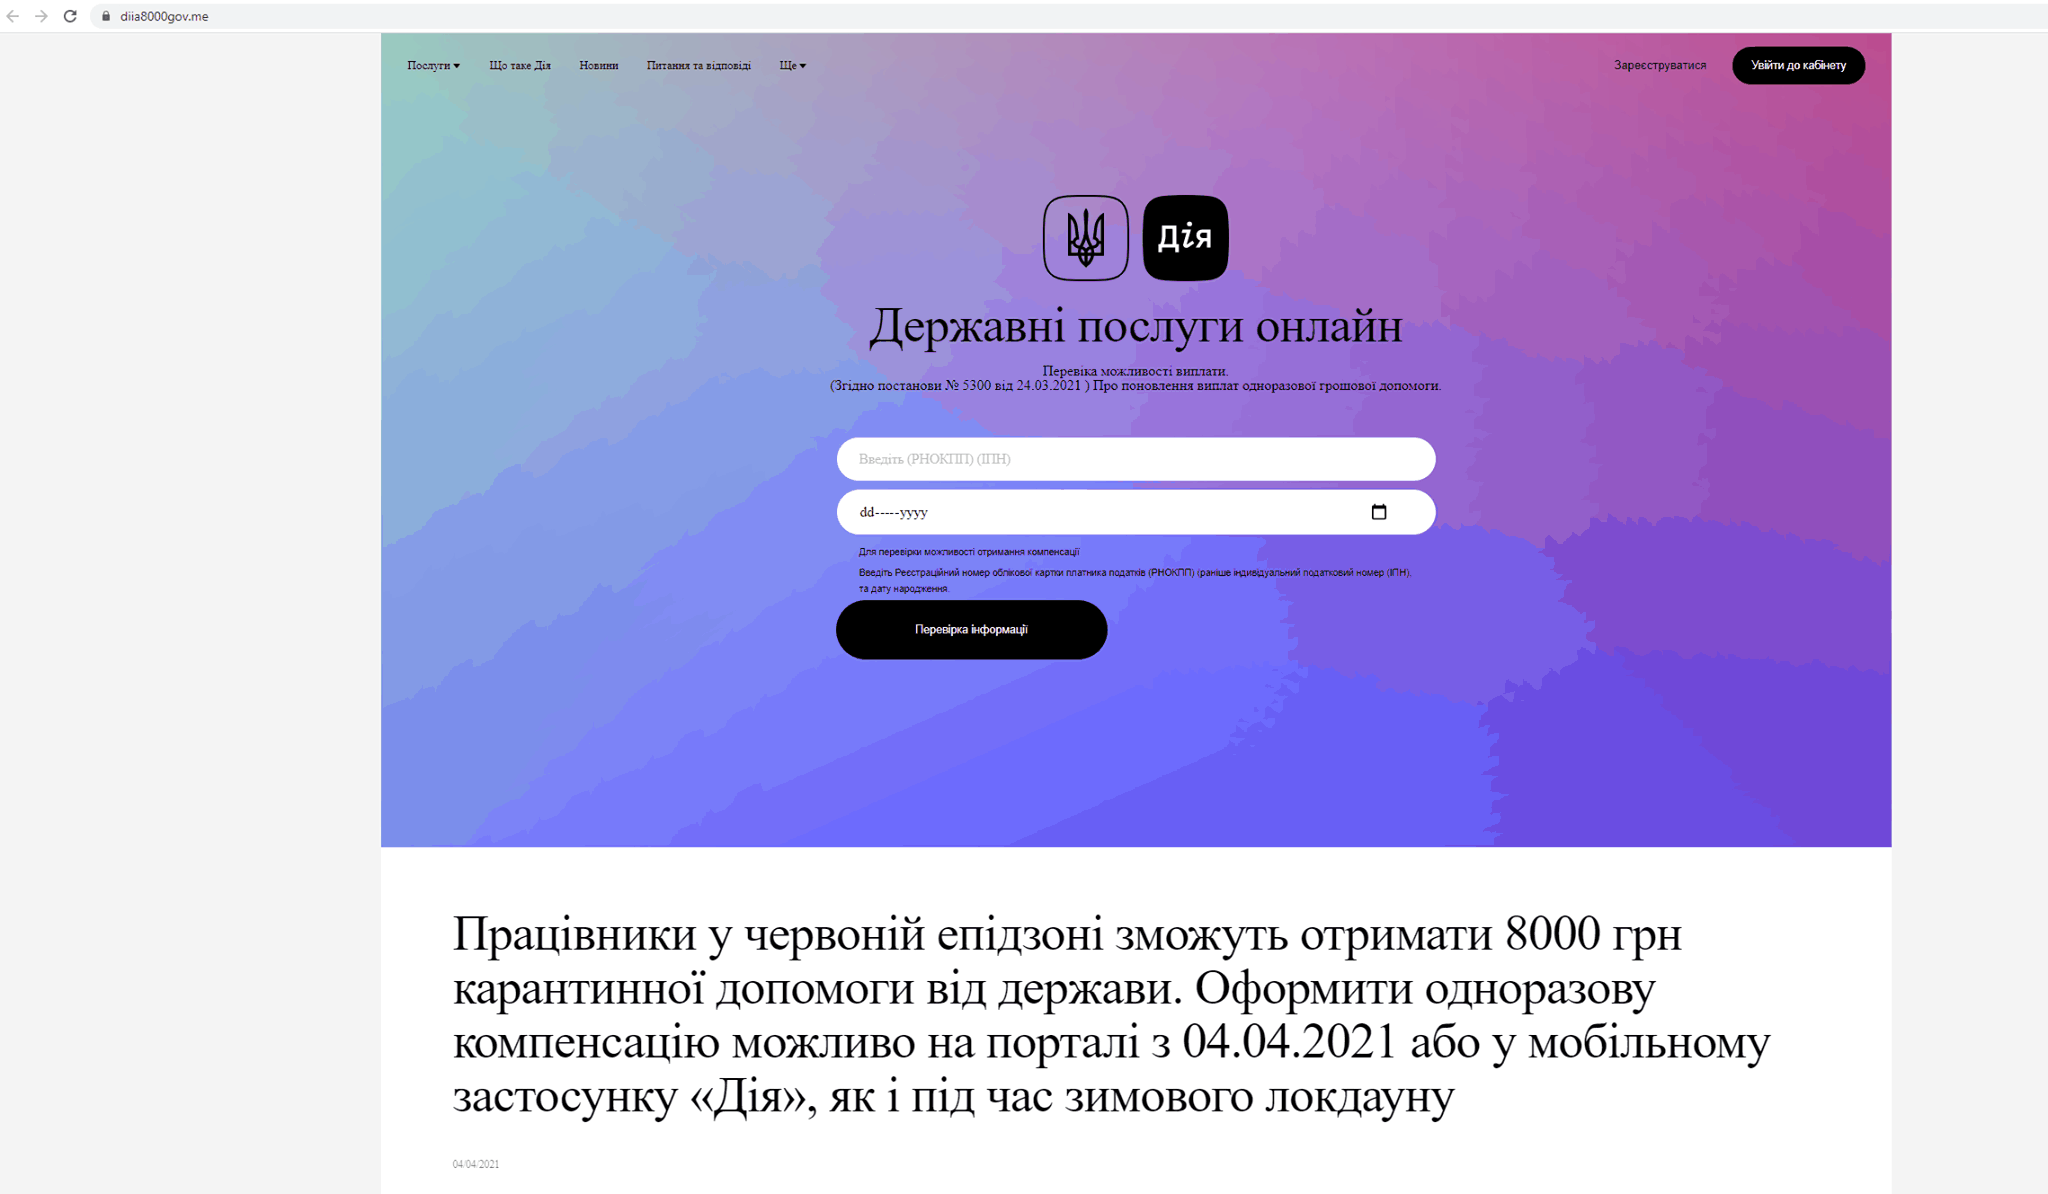 Фишинговый сайт-имитация «Дії» собирал ИНН и данные кредиток украинцев